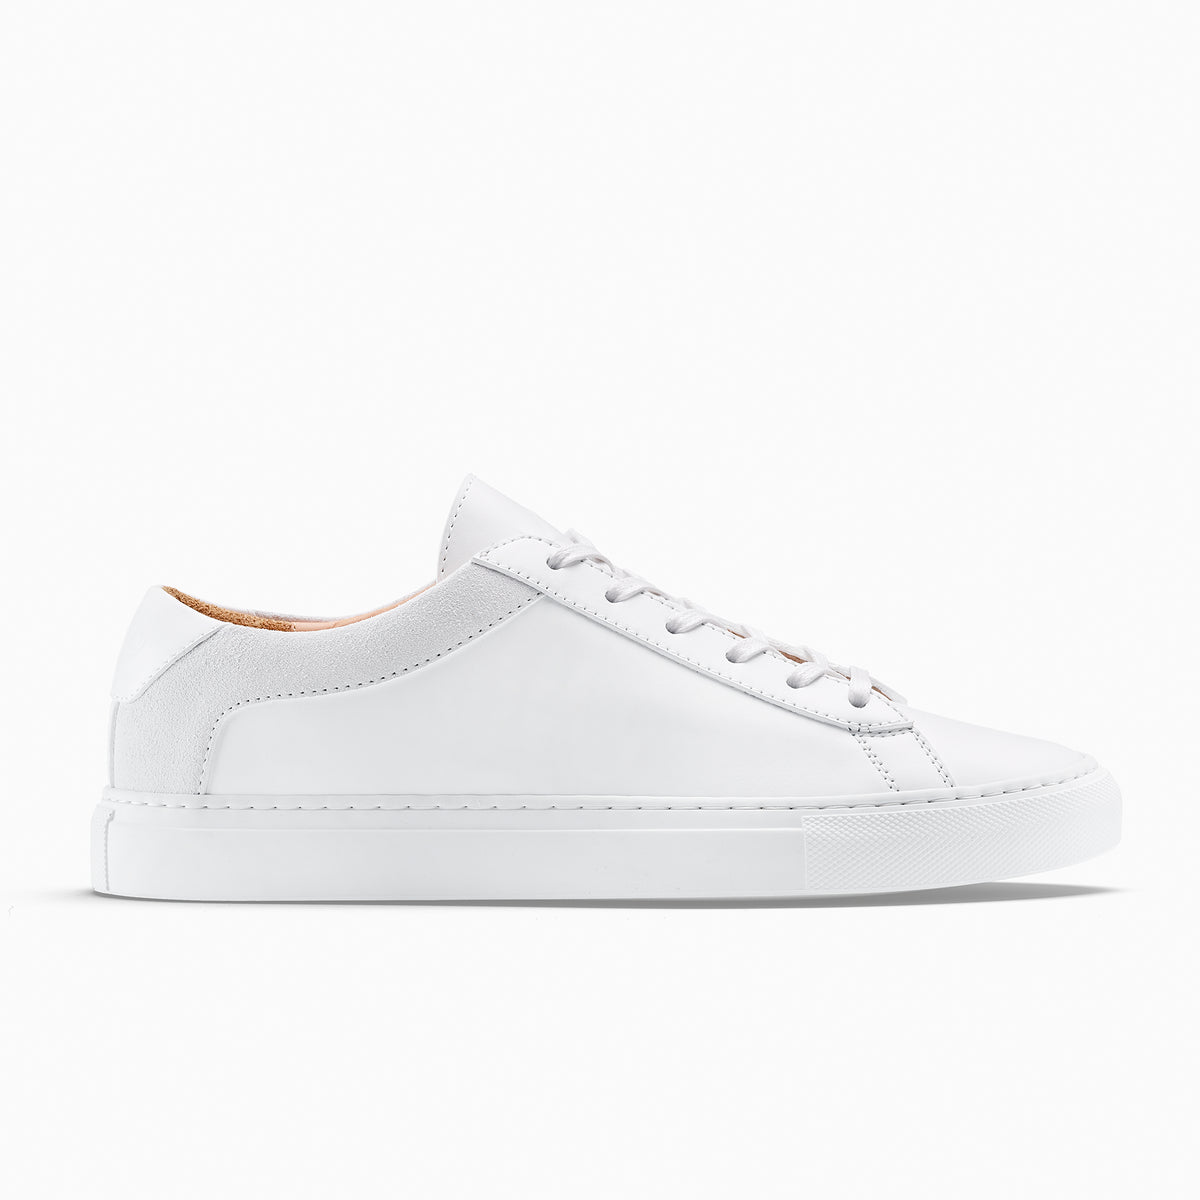 Koio Capri Men's Sneakers White | Singapore-738160